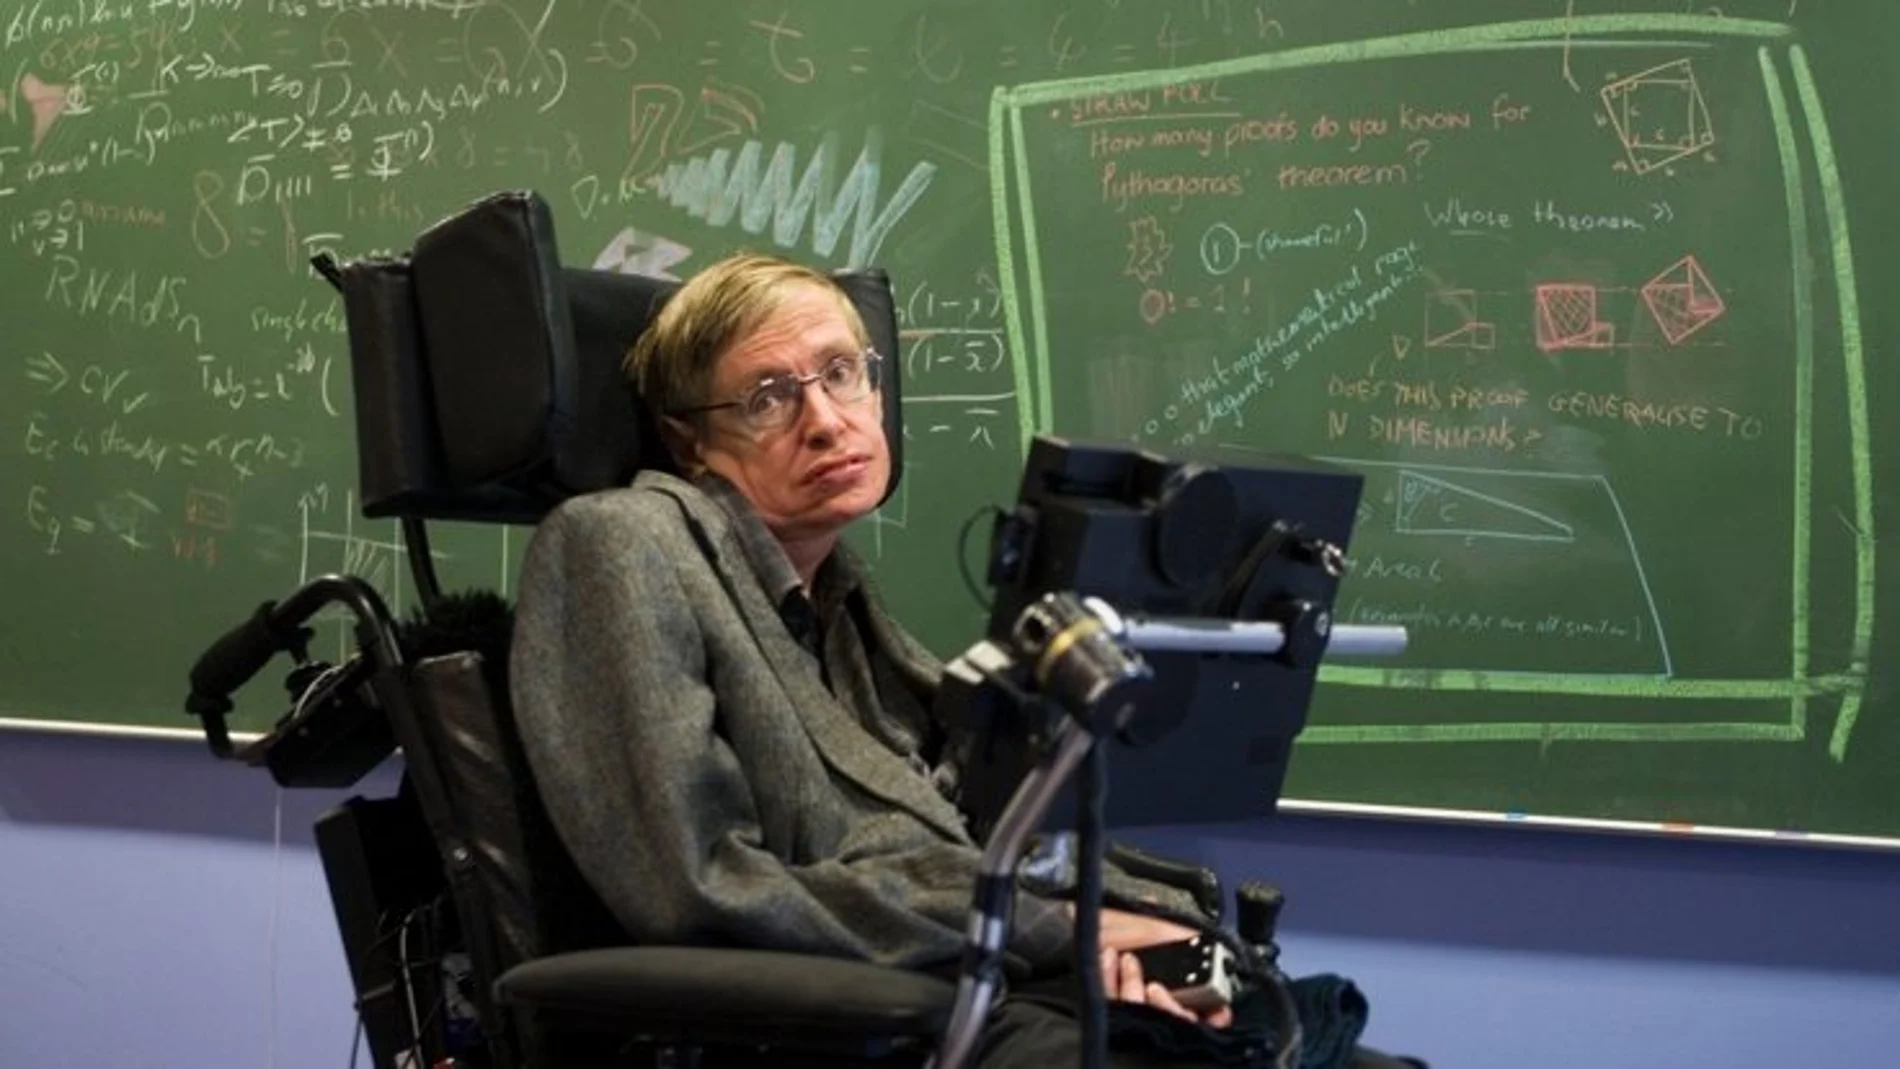 A los 21 años los médicos le diagnosticaron a Stephen Hawking esclerosis lateral amiotrófica (ELA), una enfermedad degenerativa neuromuscular